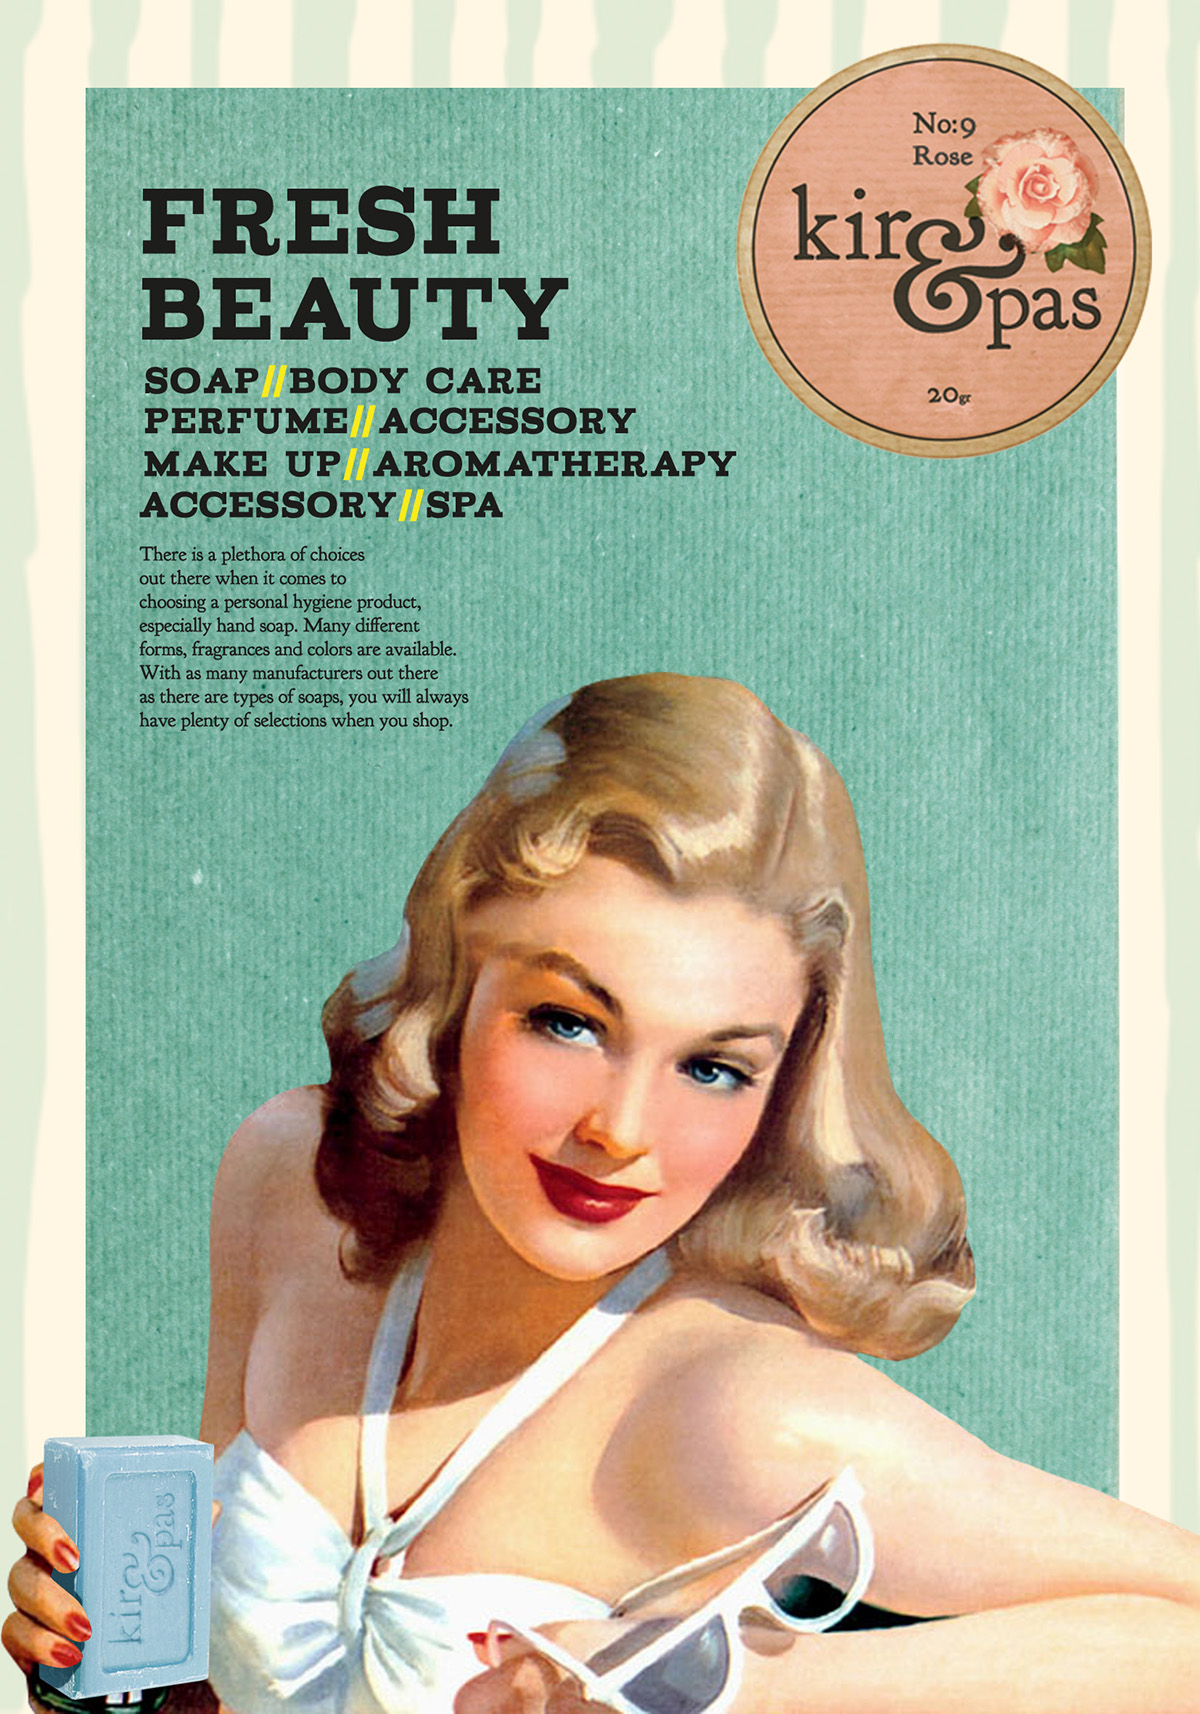 soap Body care body oil 50's vintage